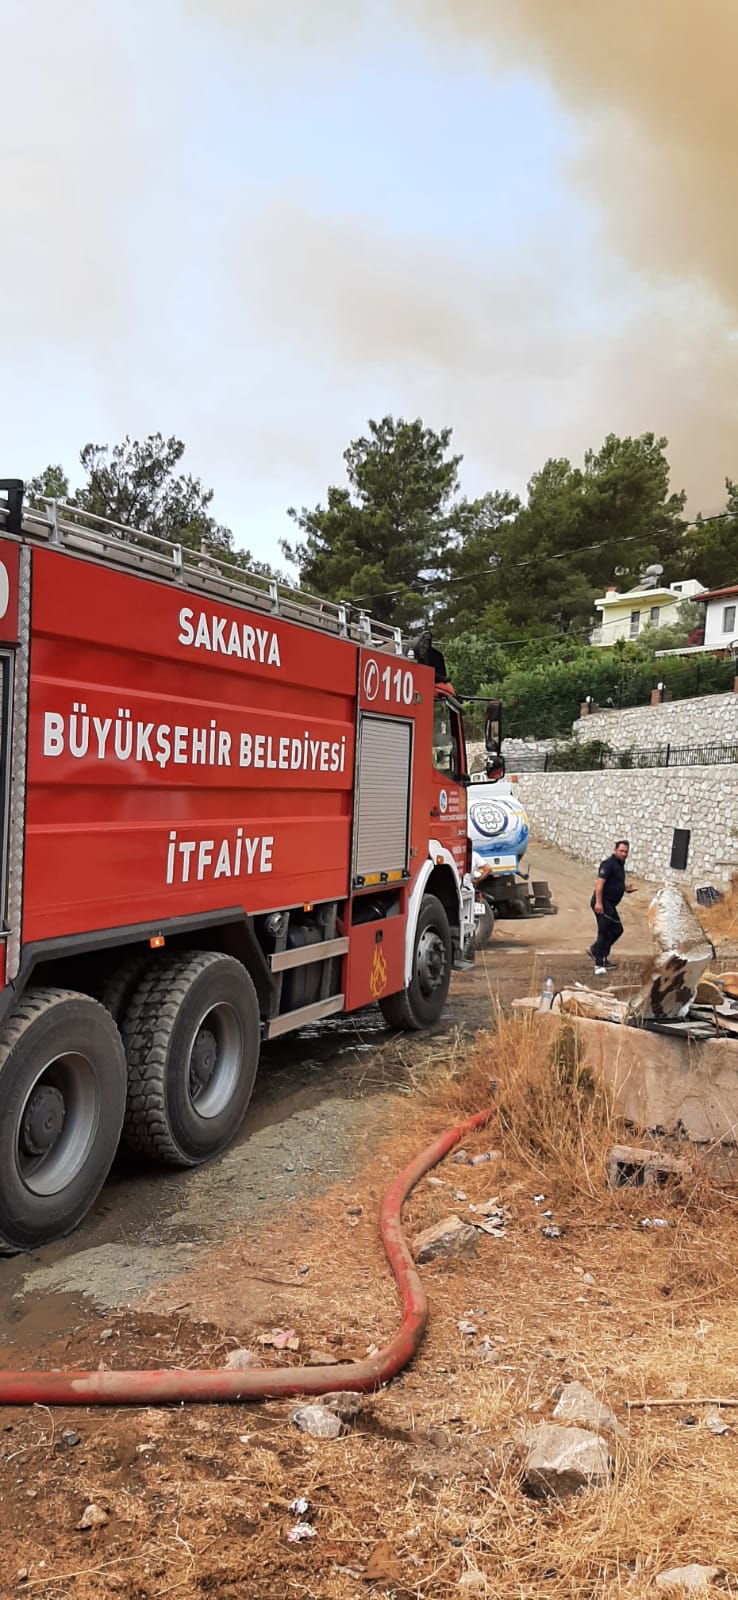 Büyükşehir İtfaiyesi Marmaris ve Manavgat’ta alevlere müdahale ediyor